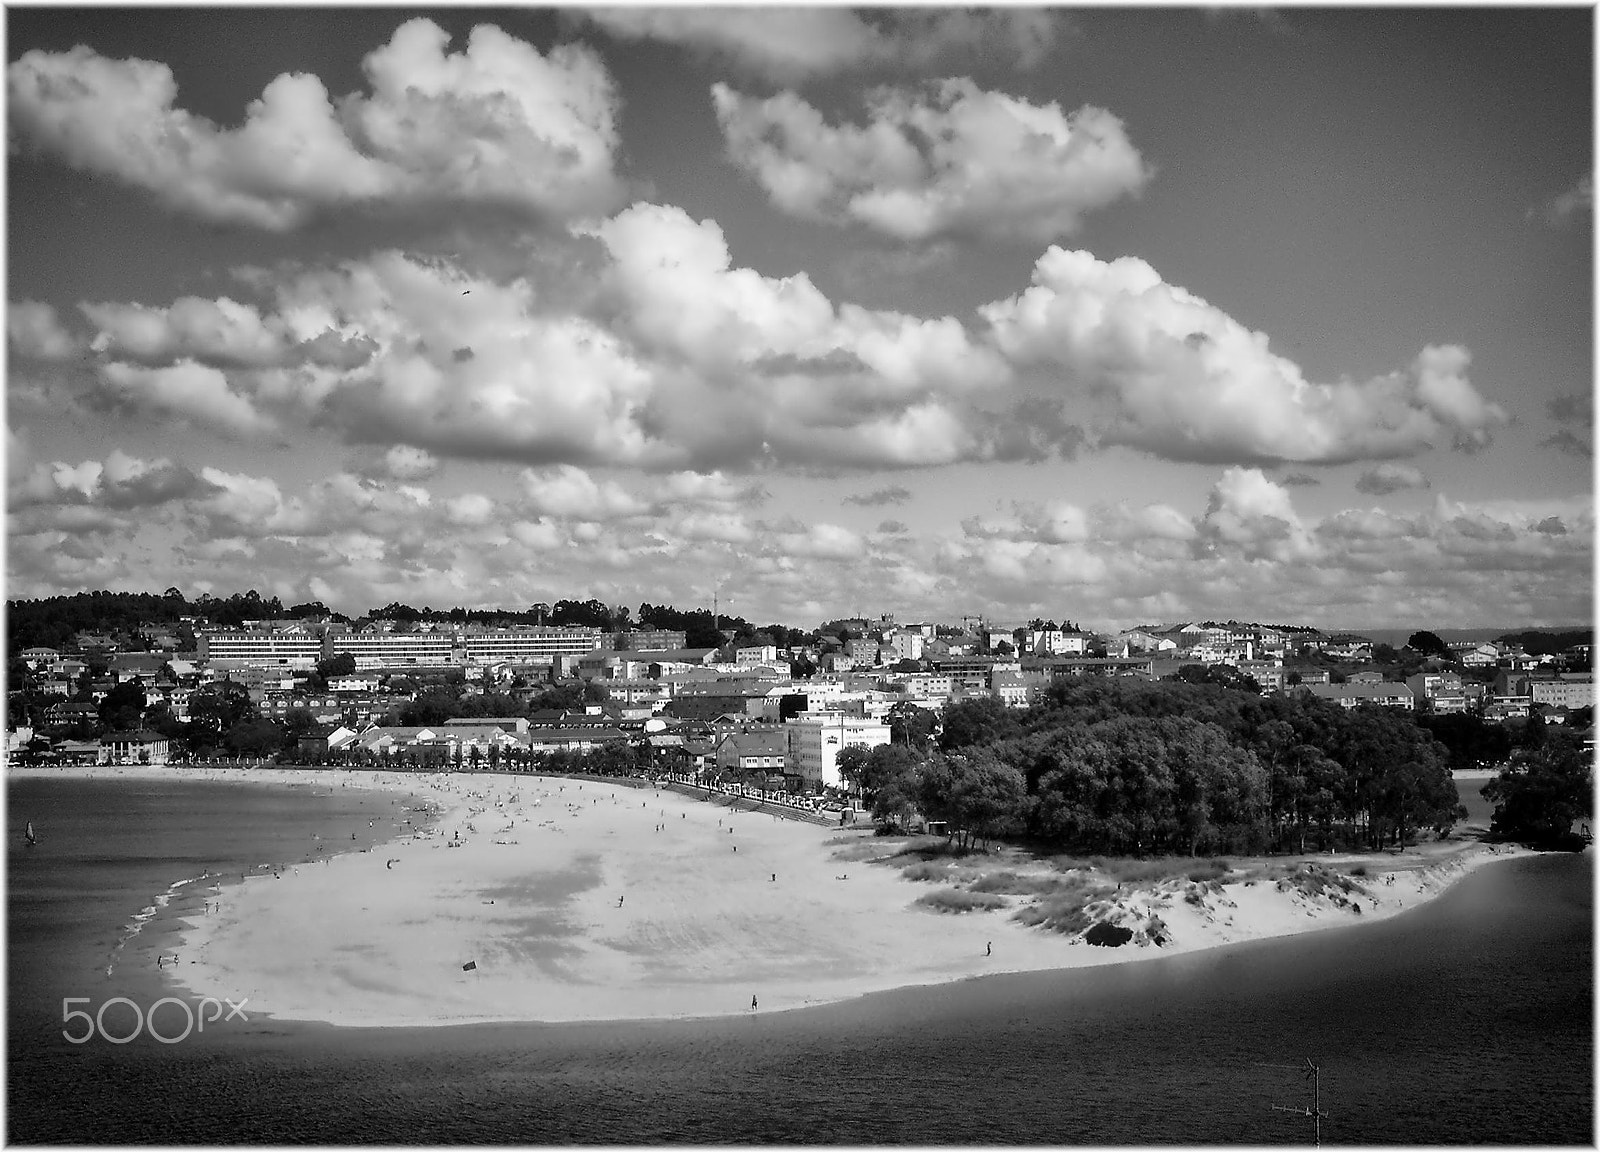 Nikon COOLPIX S4 sample photo. Playa de santa cristina photography